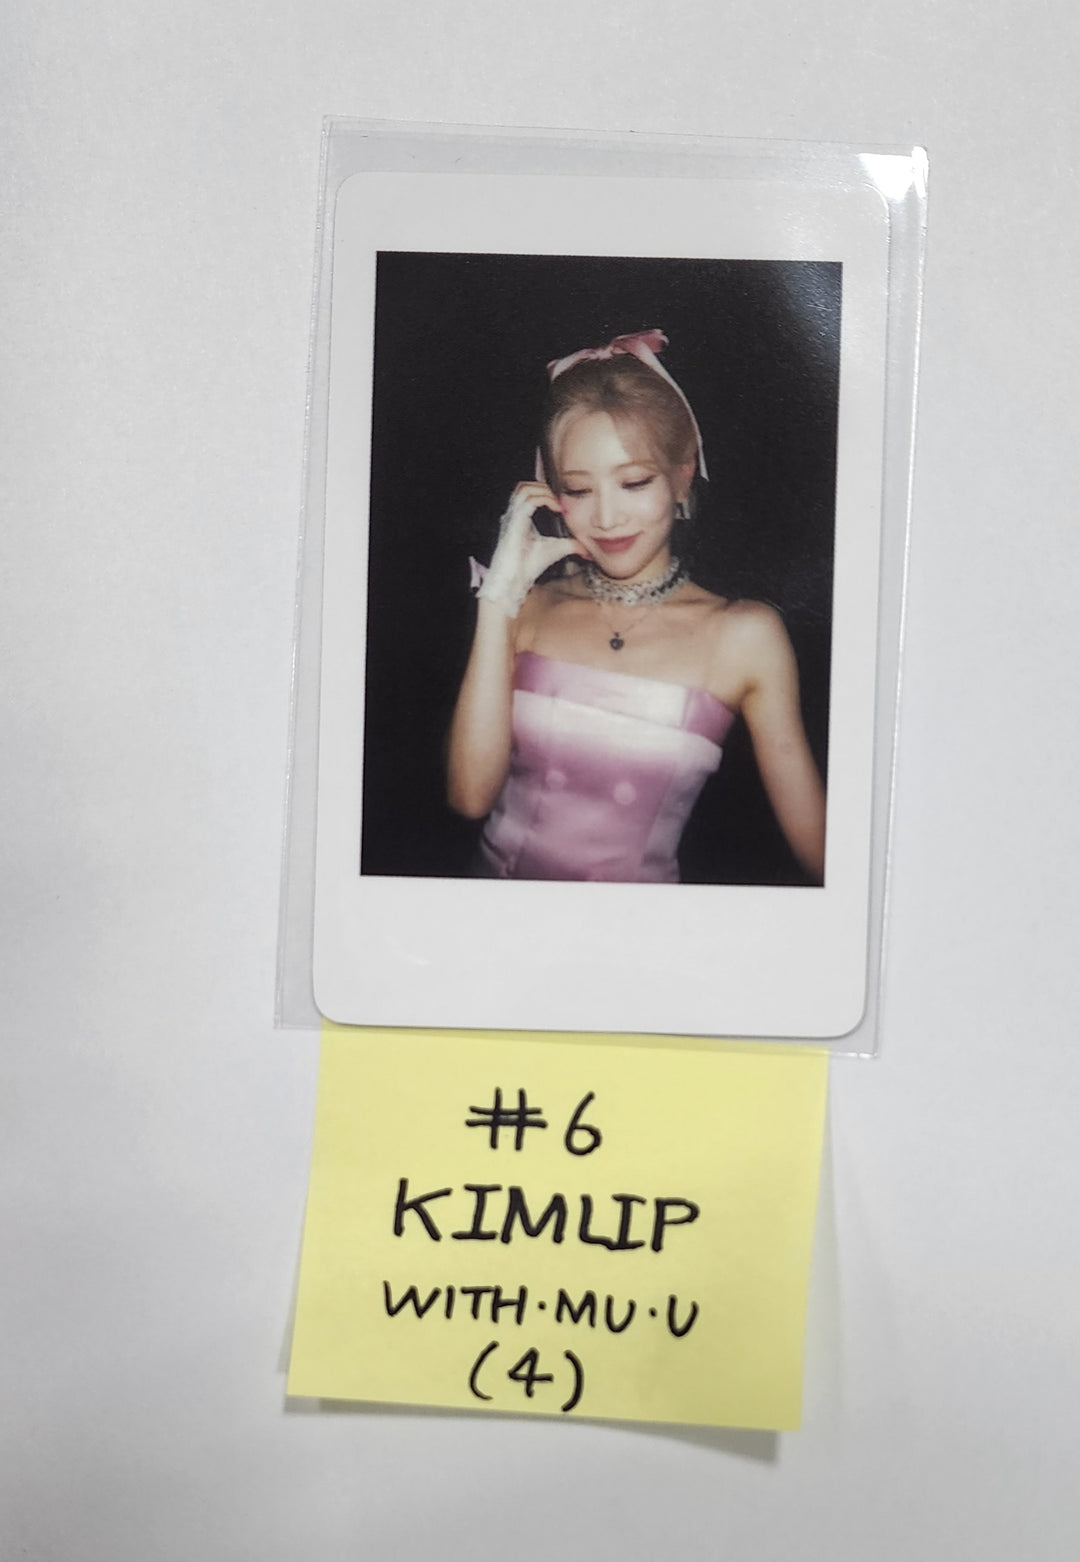 이달의 소녀 "Flip That" 여름 스페셜 미니앨범 - Withmuu 예약판매 혜택 폴라로이드형 포토카드